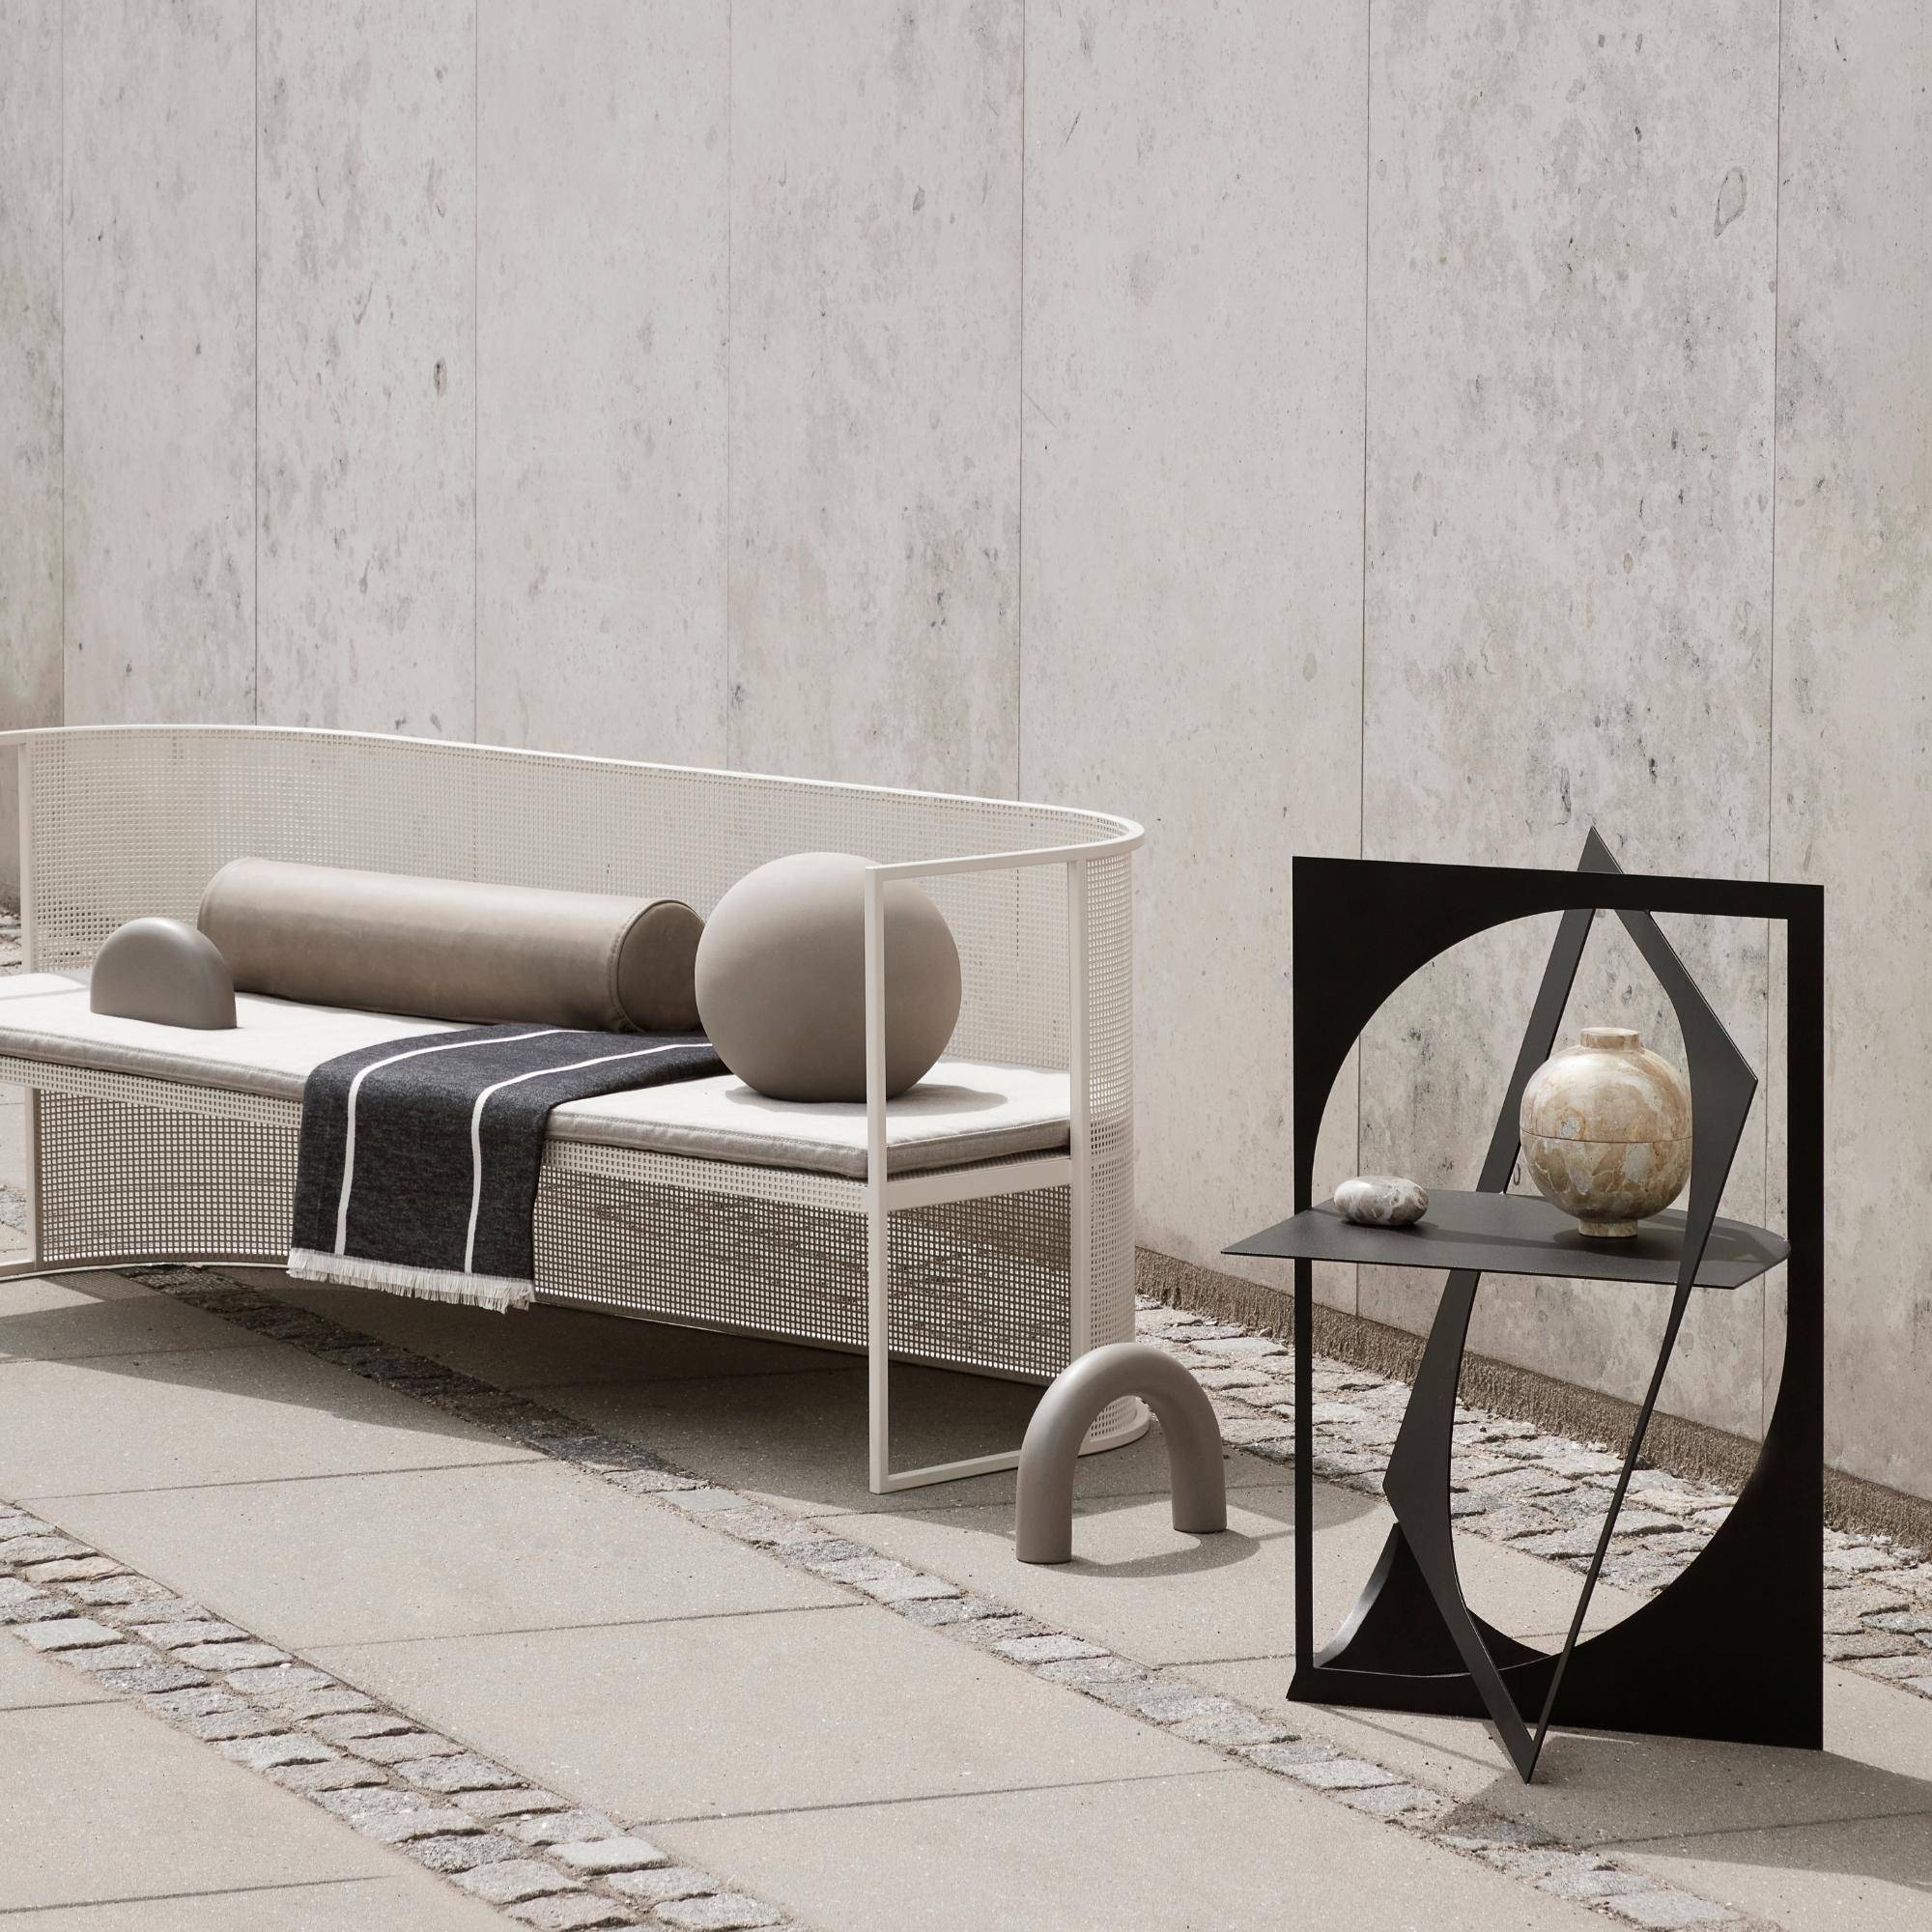 Bauhaus Lounge Bench - THAT COOL LIVING